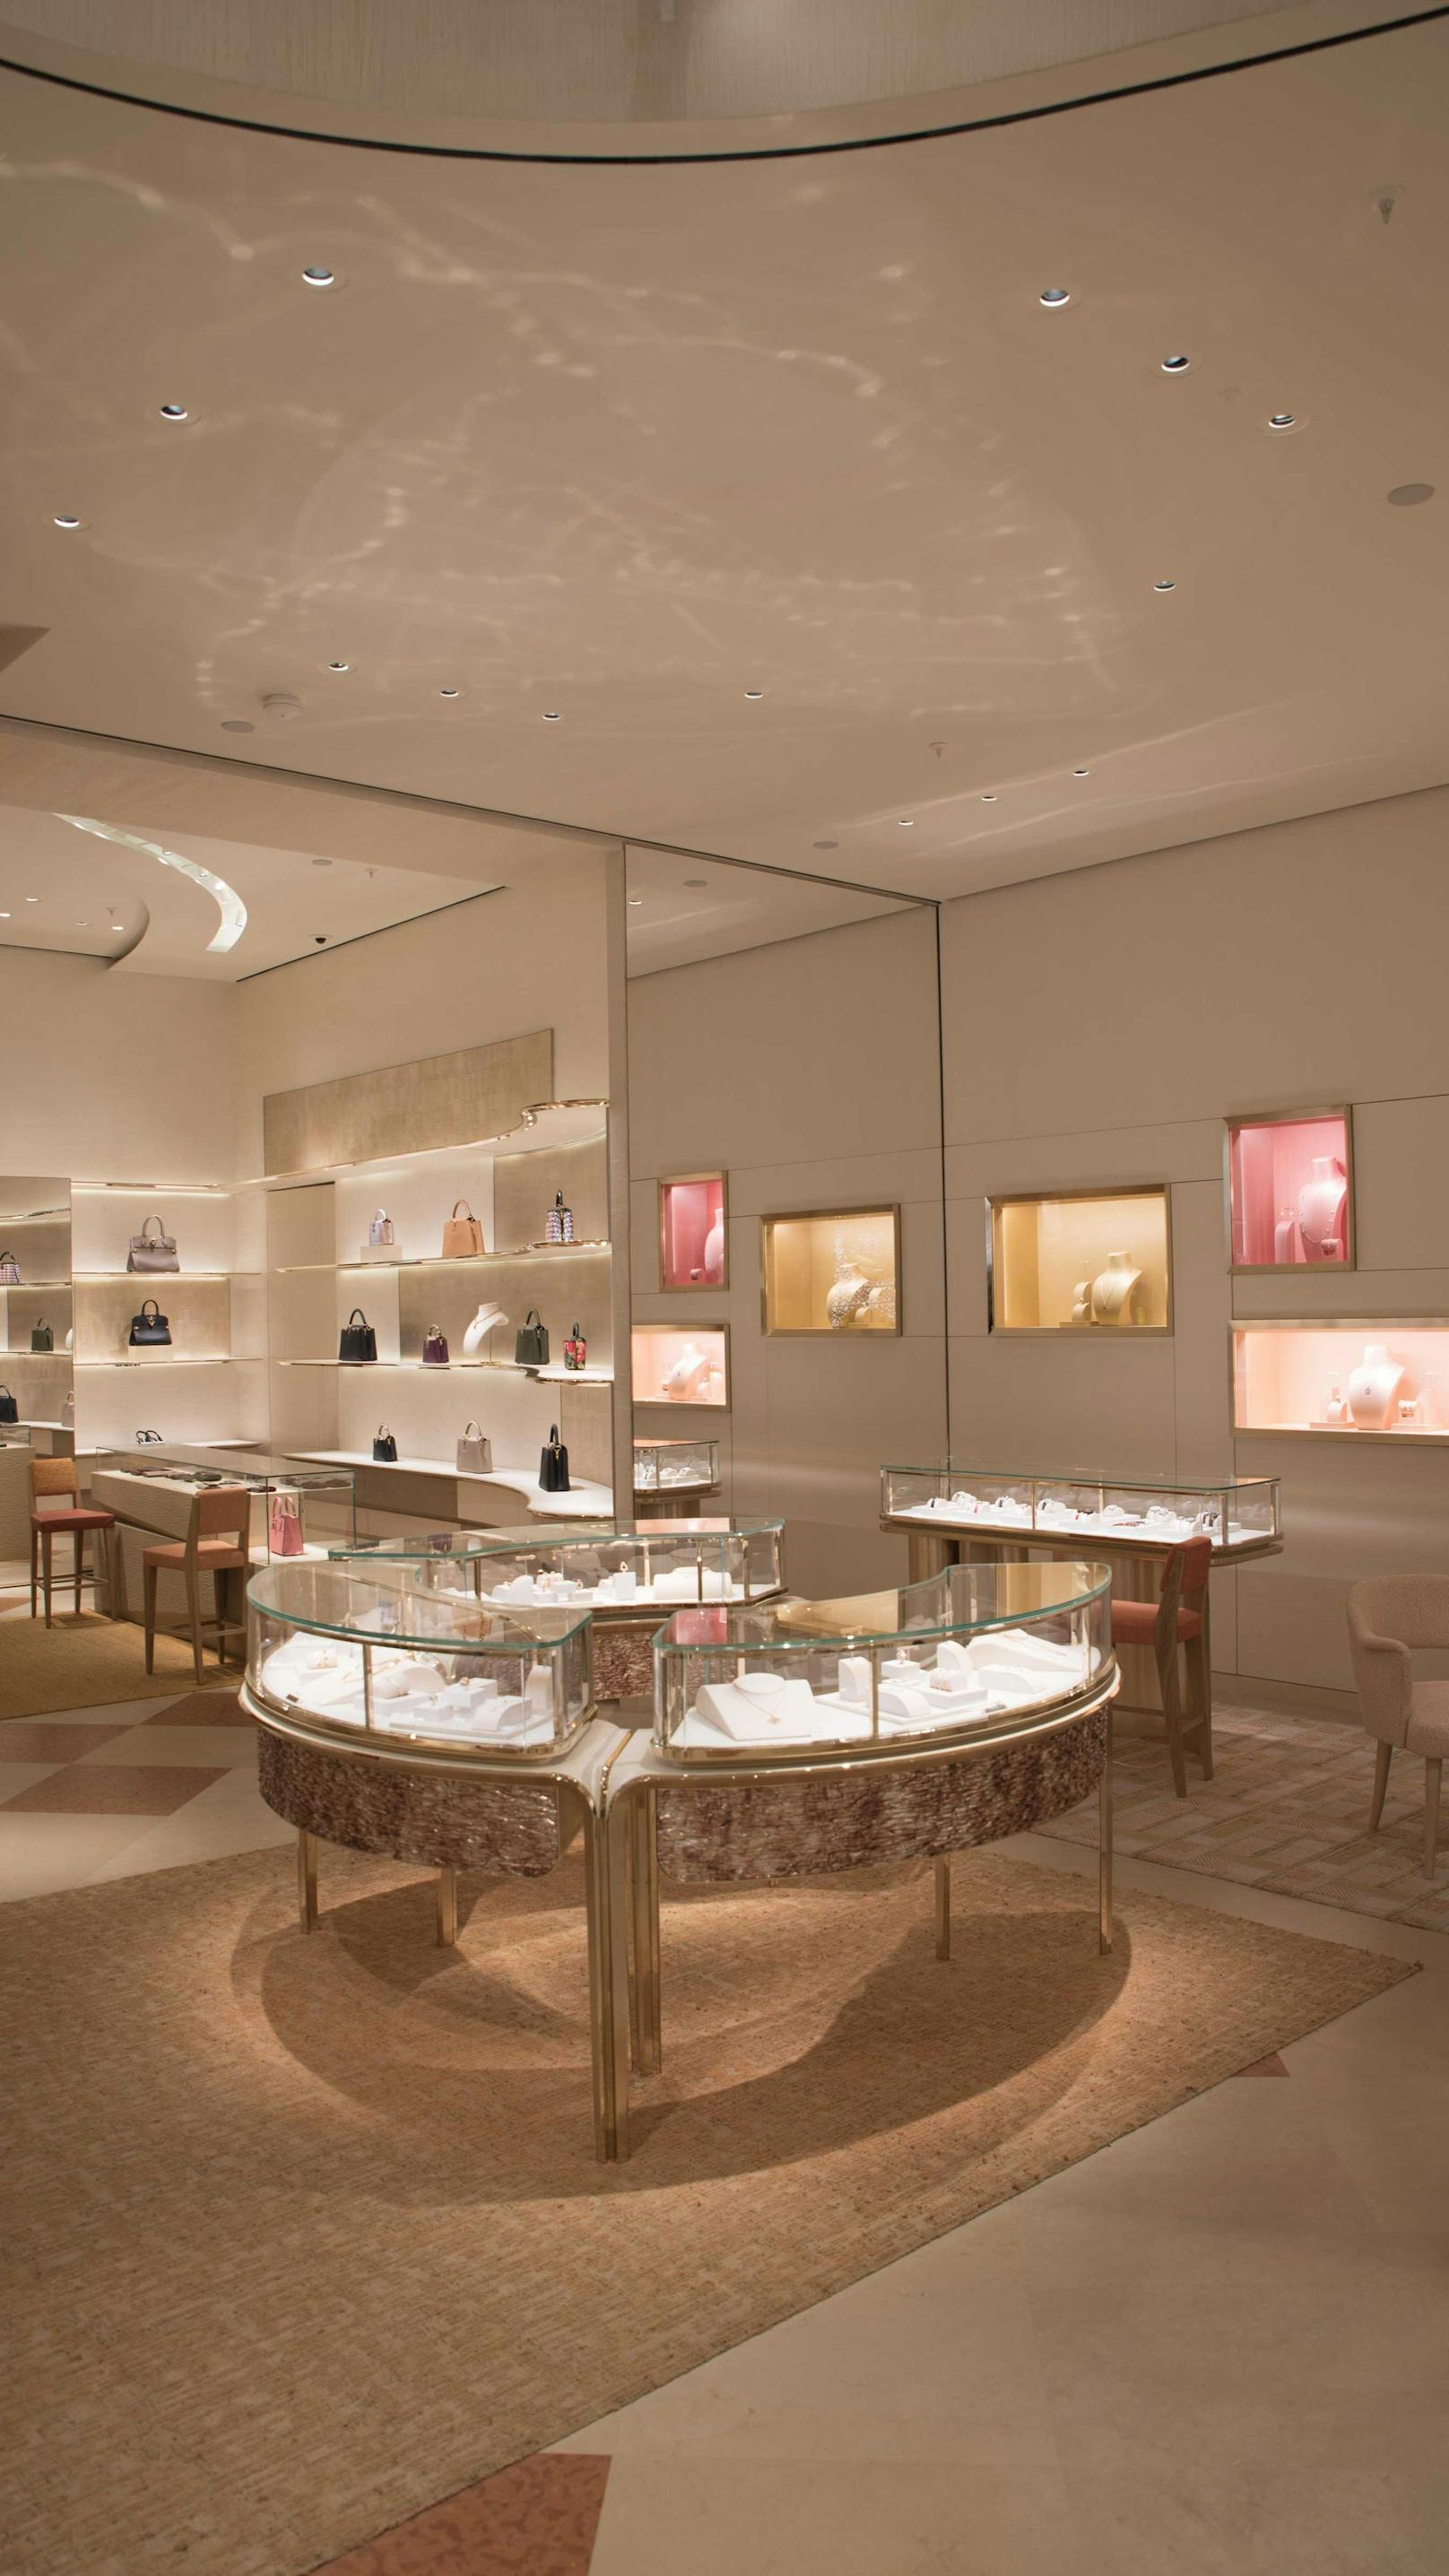 Neuer Wiener Louis Vuitton Store zeigt sich kunstvoll